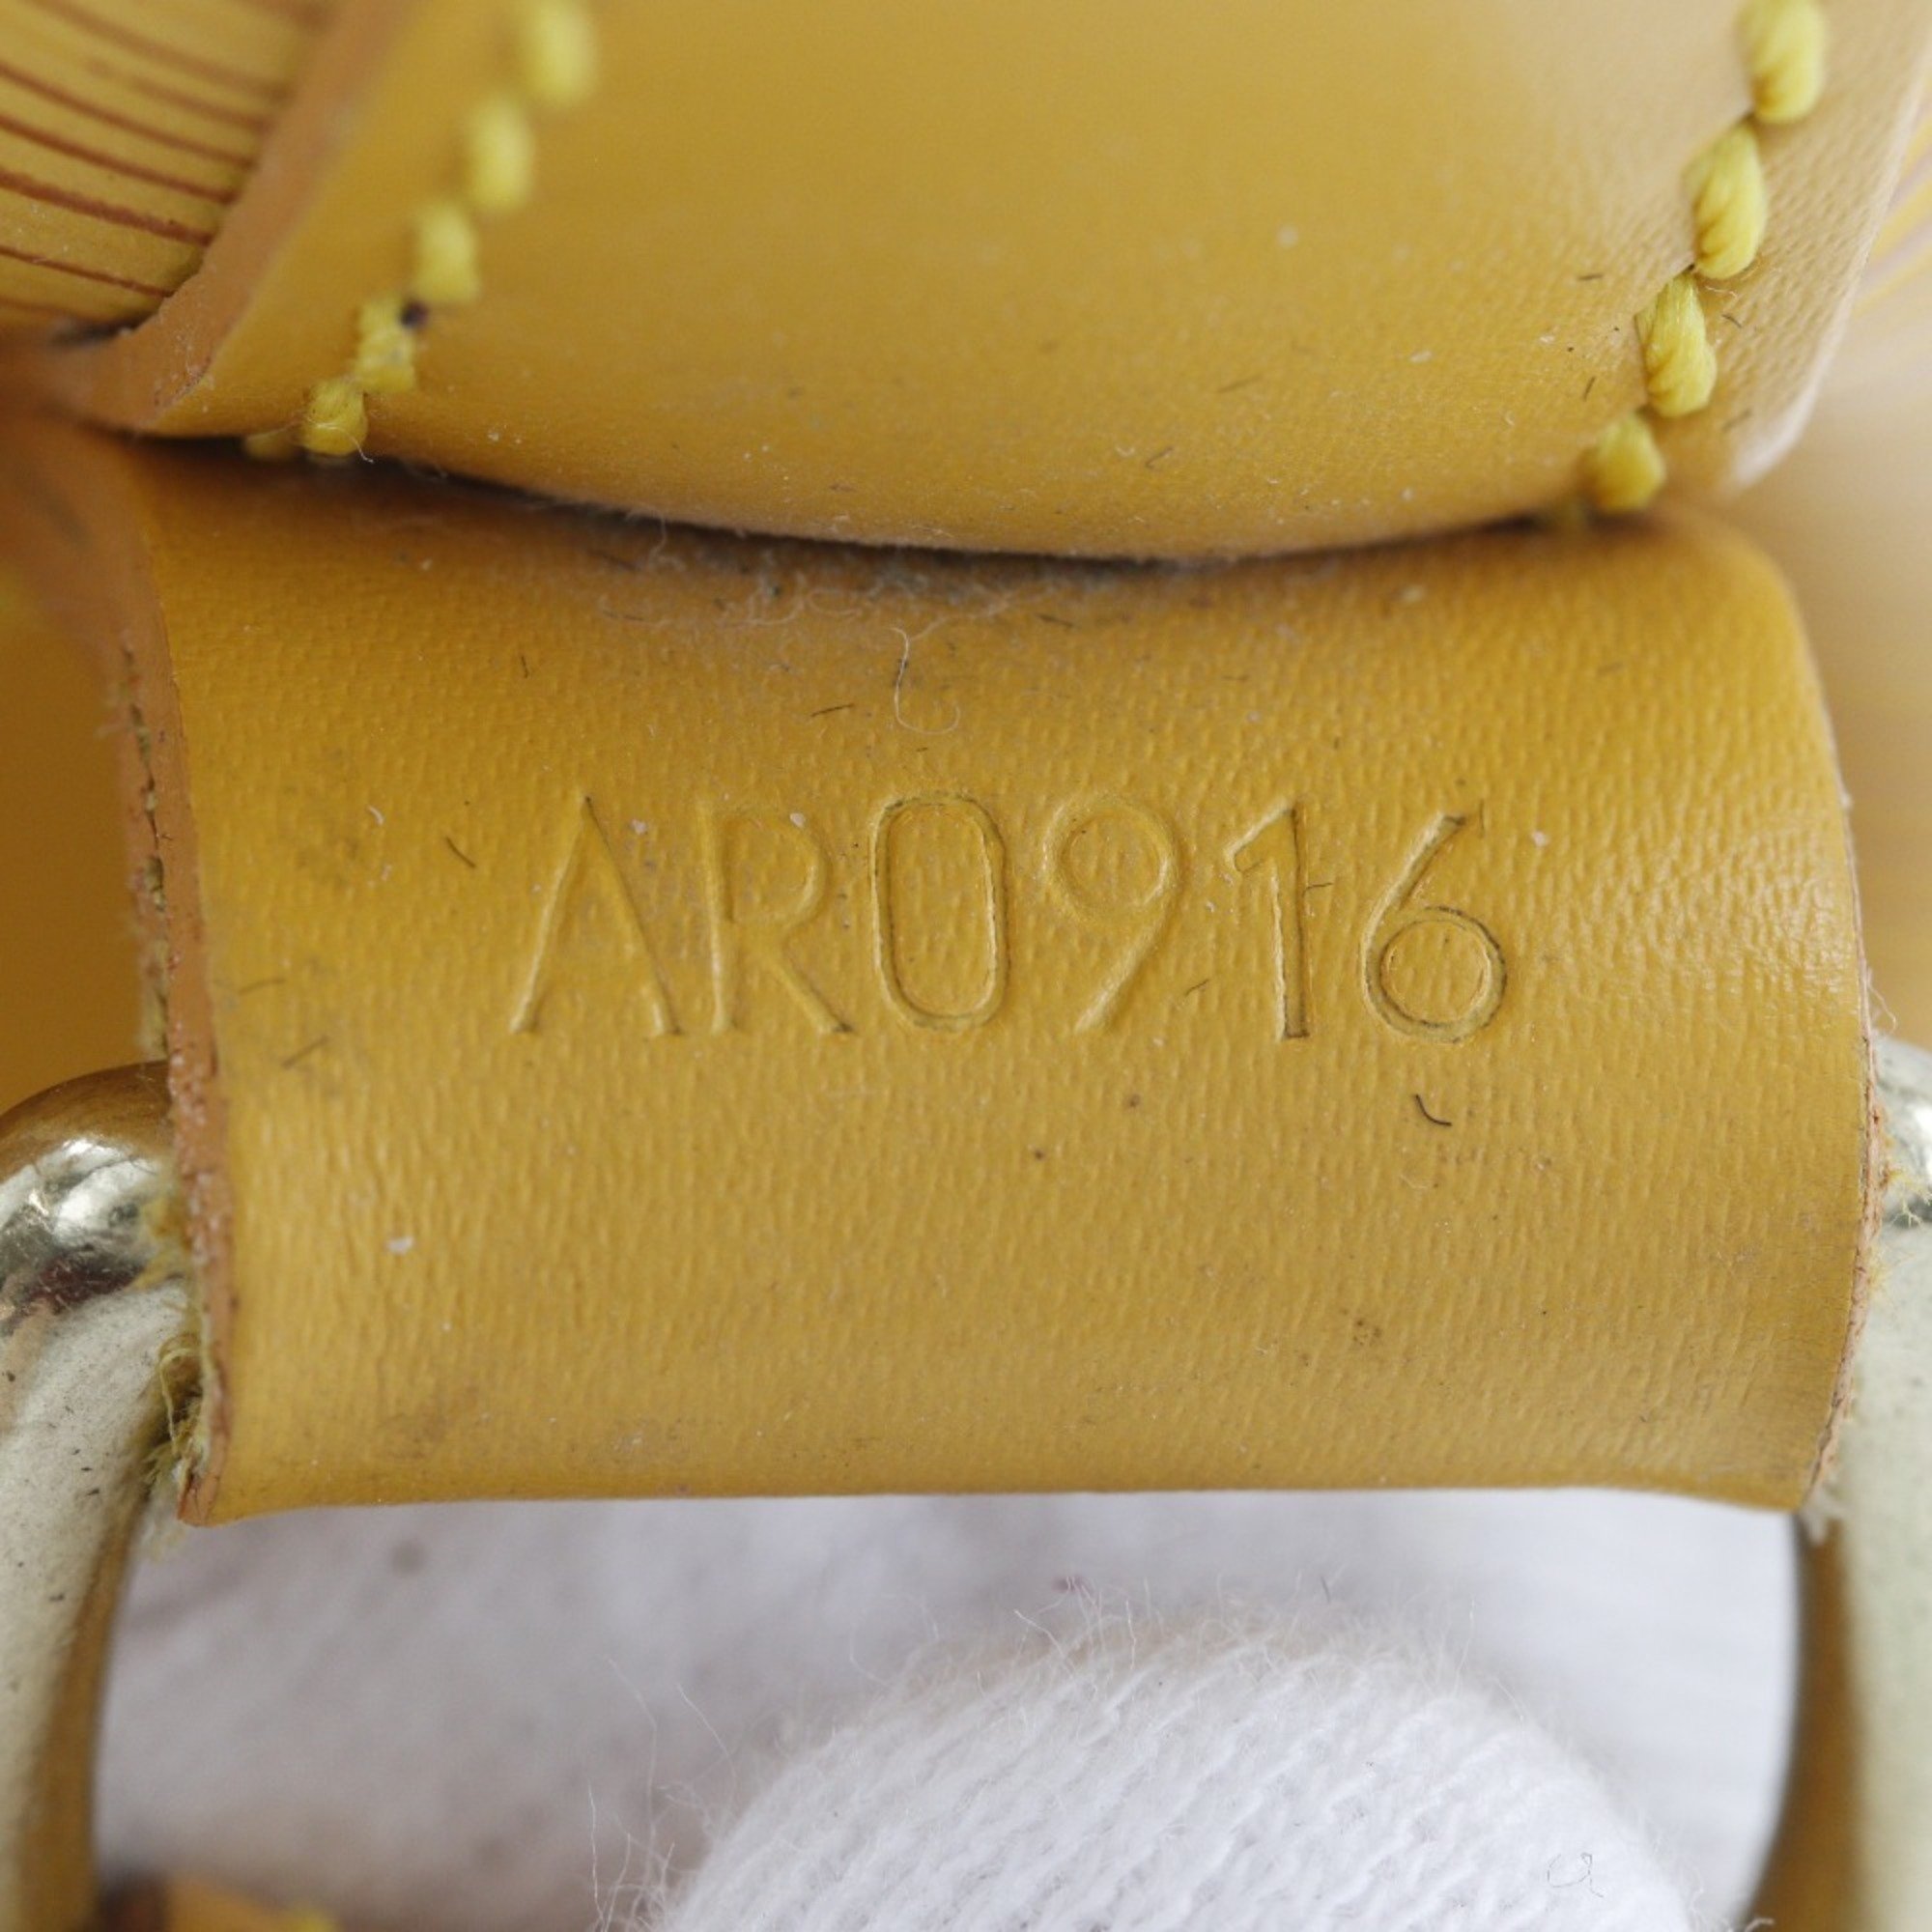 Louis Vuitton Noe Shoulder Bag M44009 Epi Leather Tassili Yellow 1996 AR0916 A5 Women's H132524717